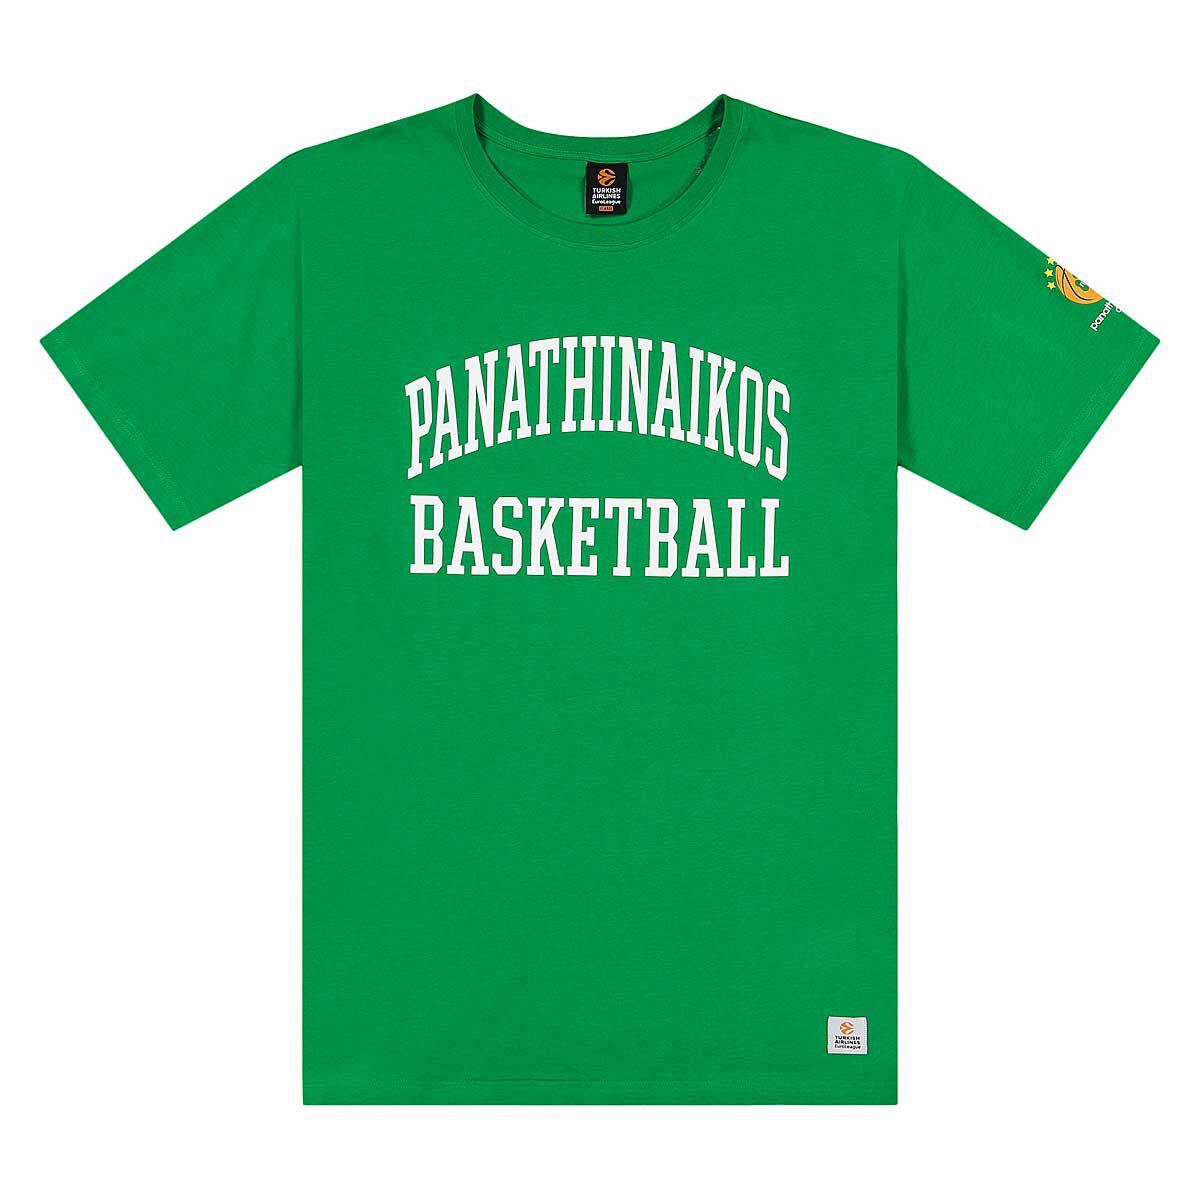 Vêtements Hommes | Panathinaikos T-Shirt 19/20 - SZ69733